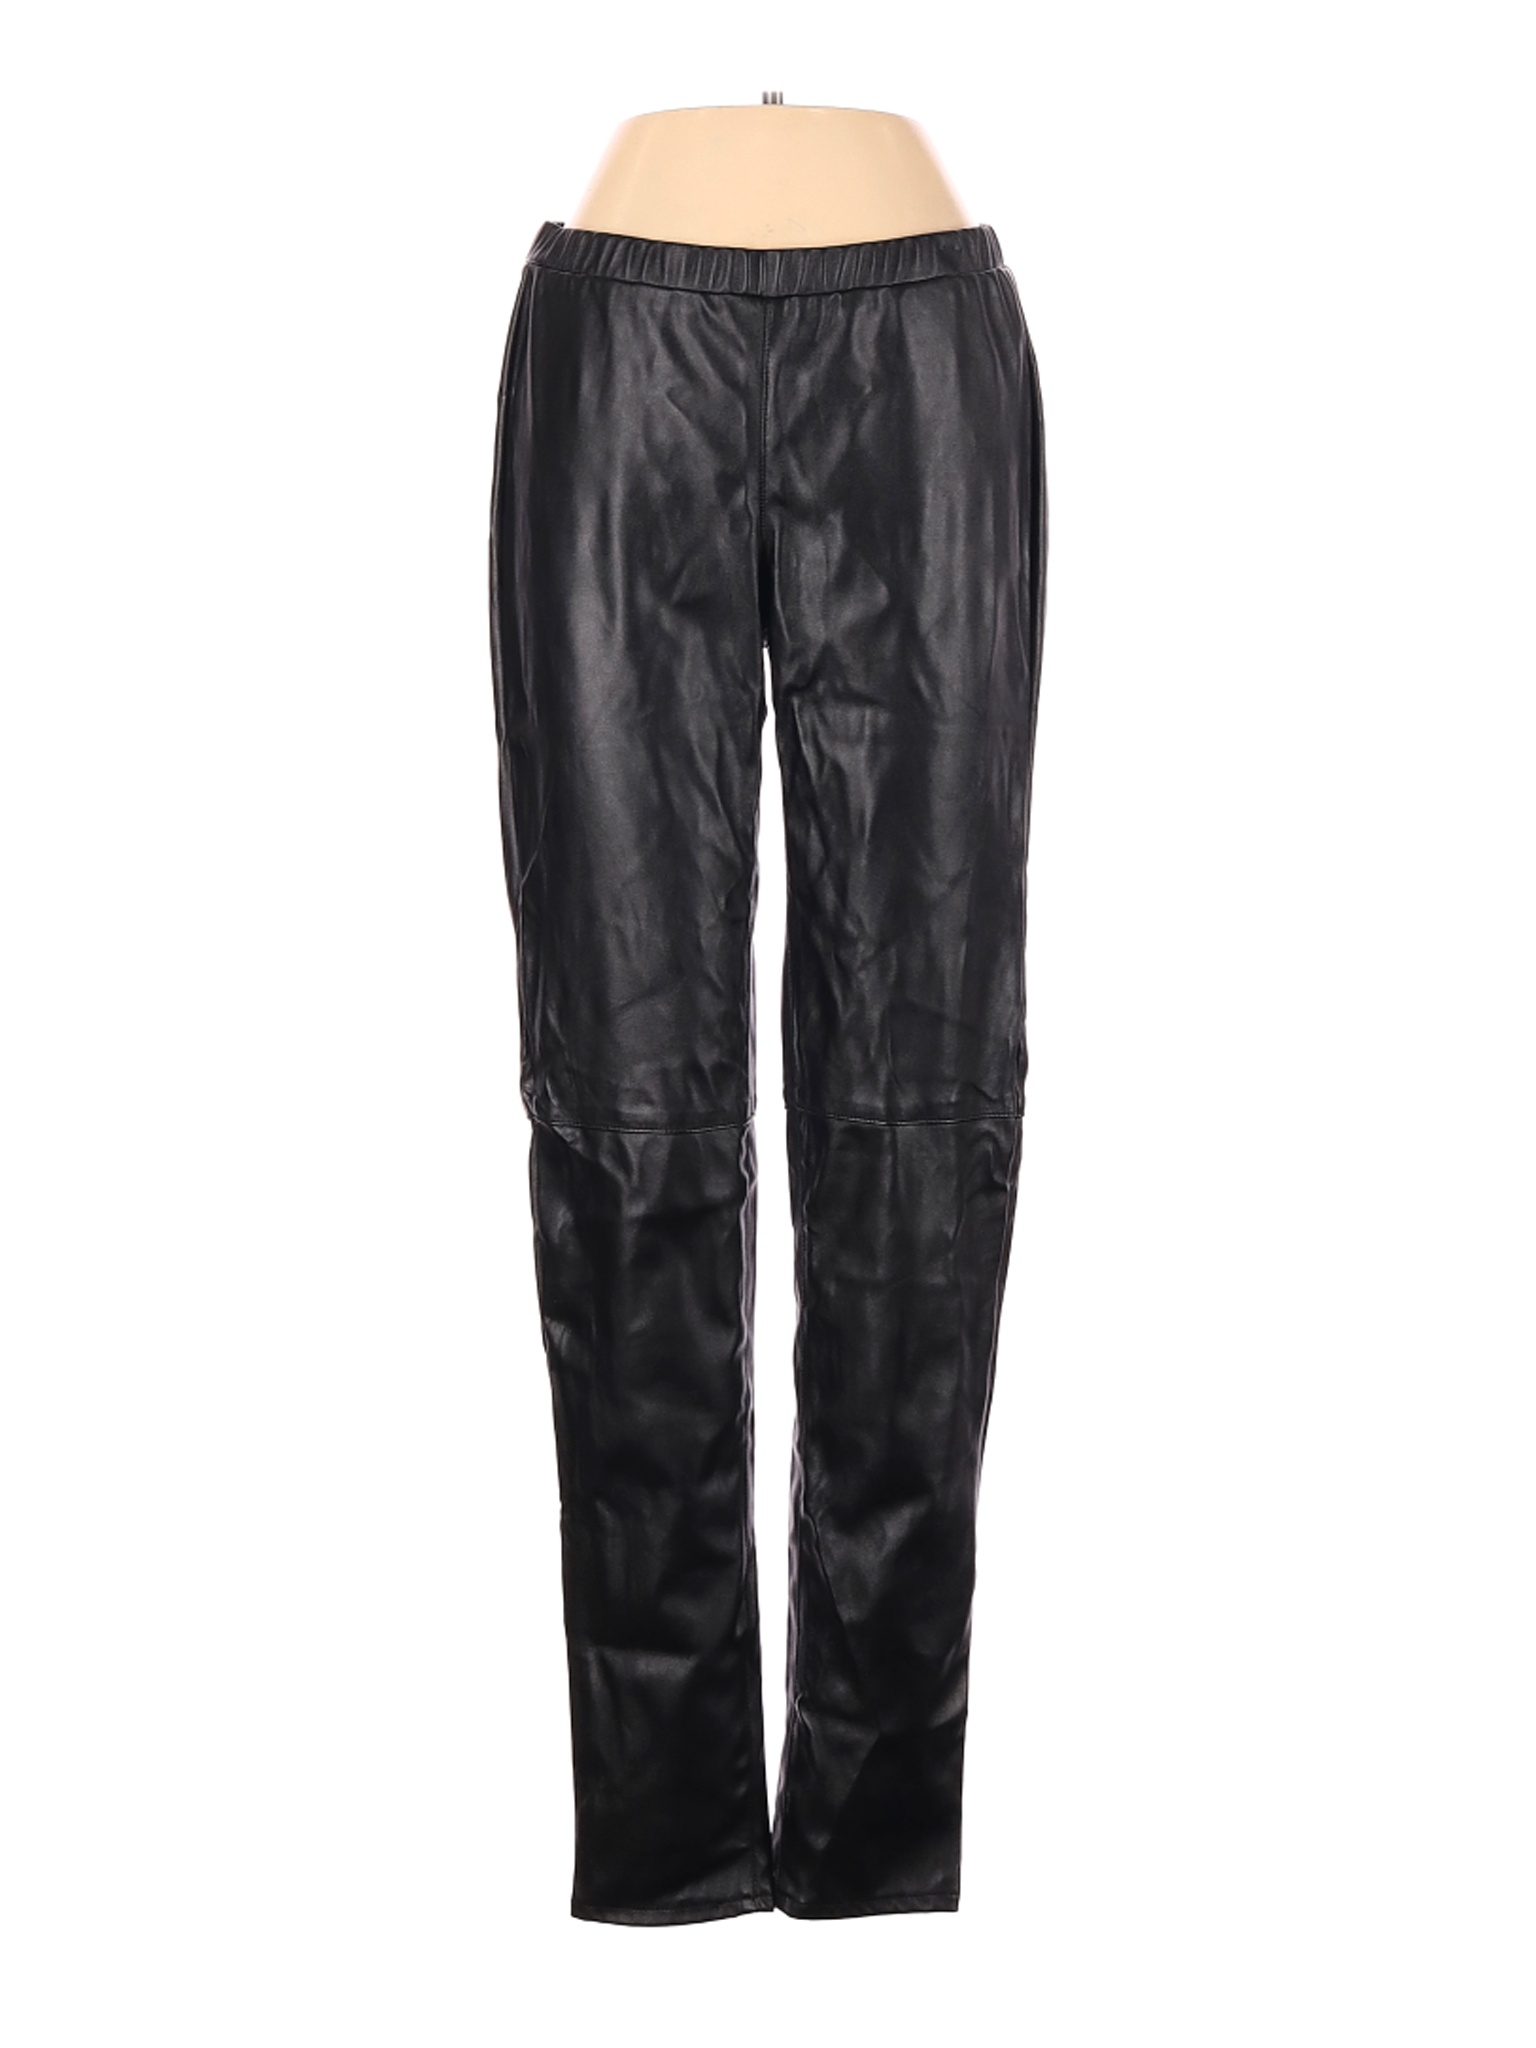 michael kors faux leather pants